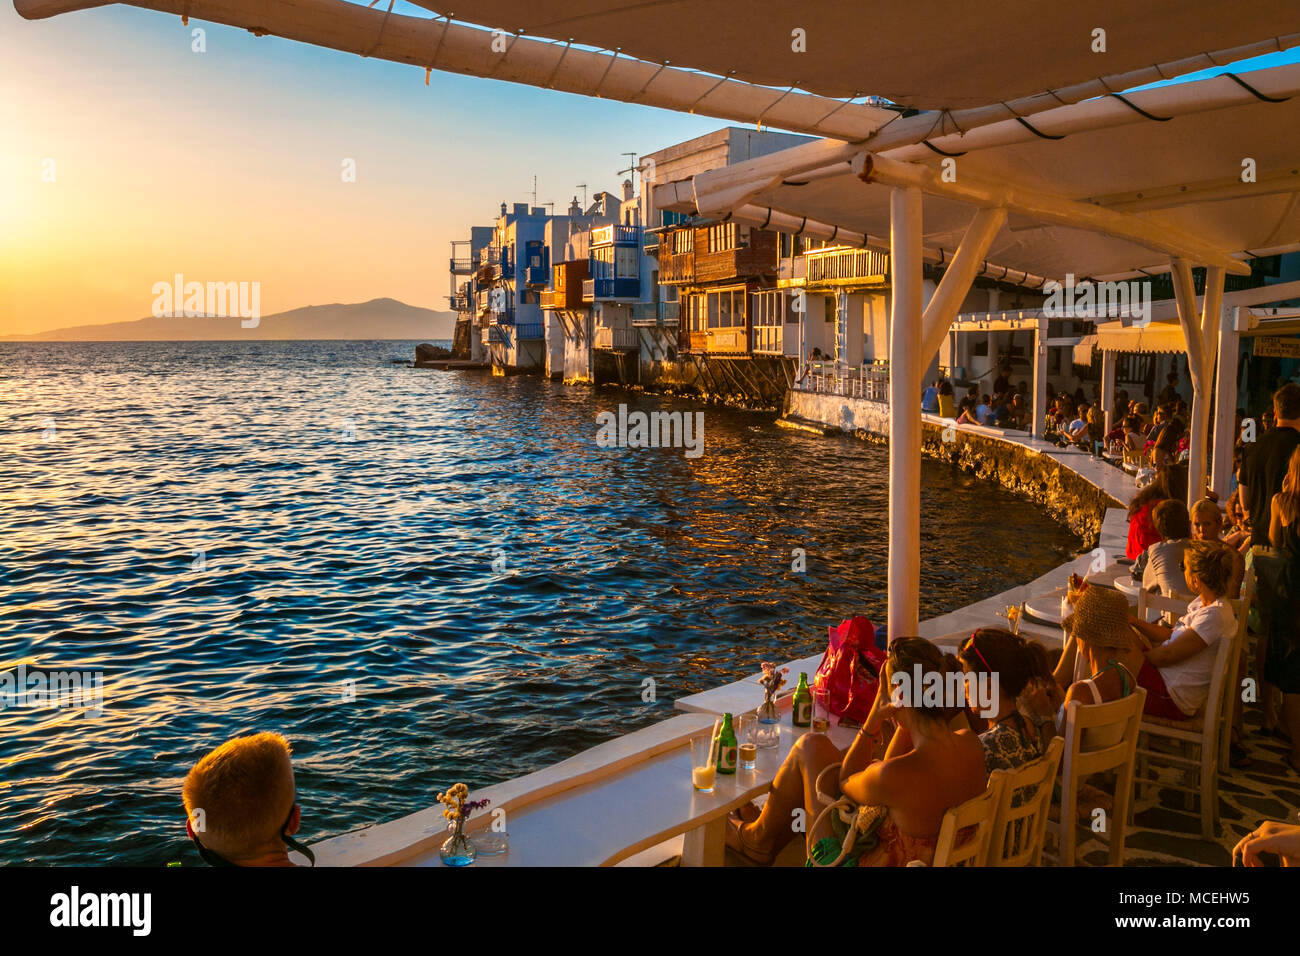 La petite Venise. La ville de Mykonos. Chora. L'île de Mykonos. Ciclades Îles. Grèce Banque D'Images